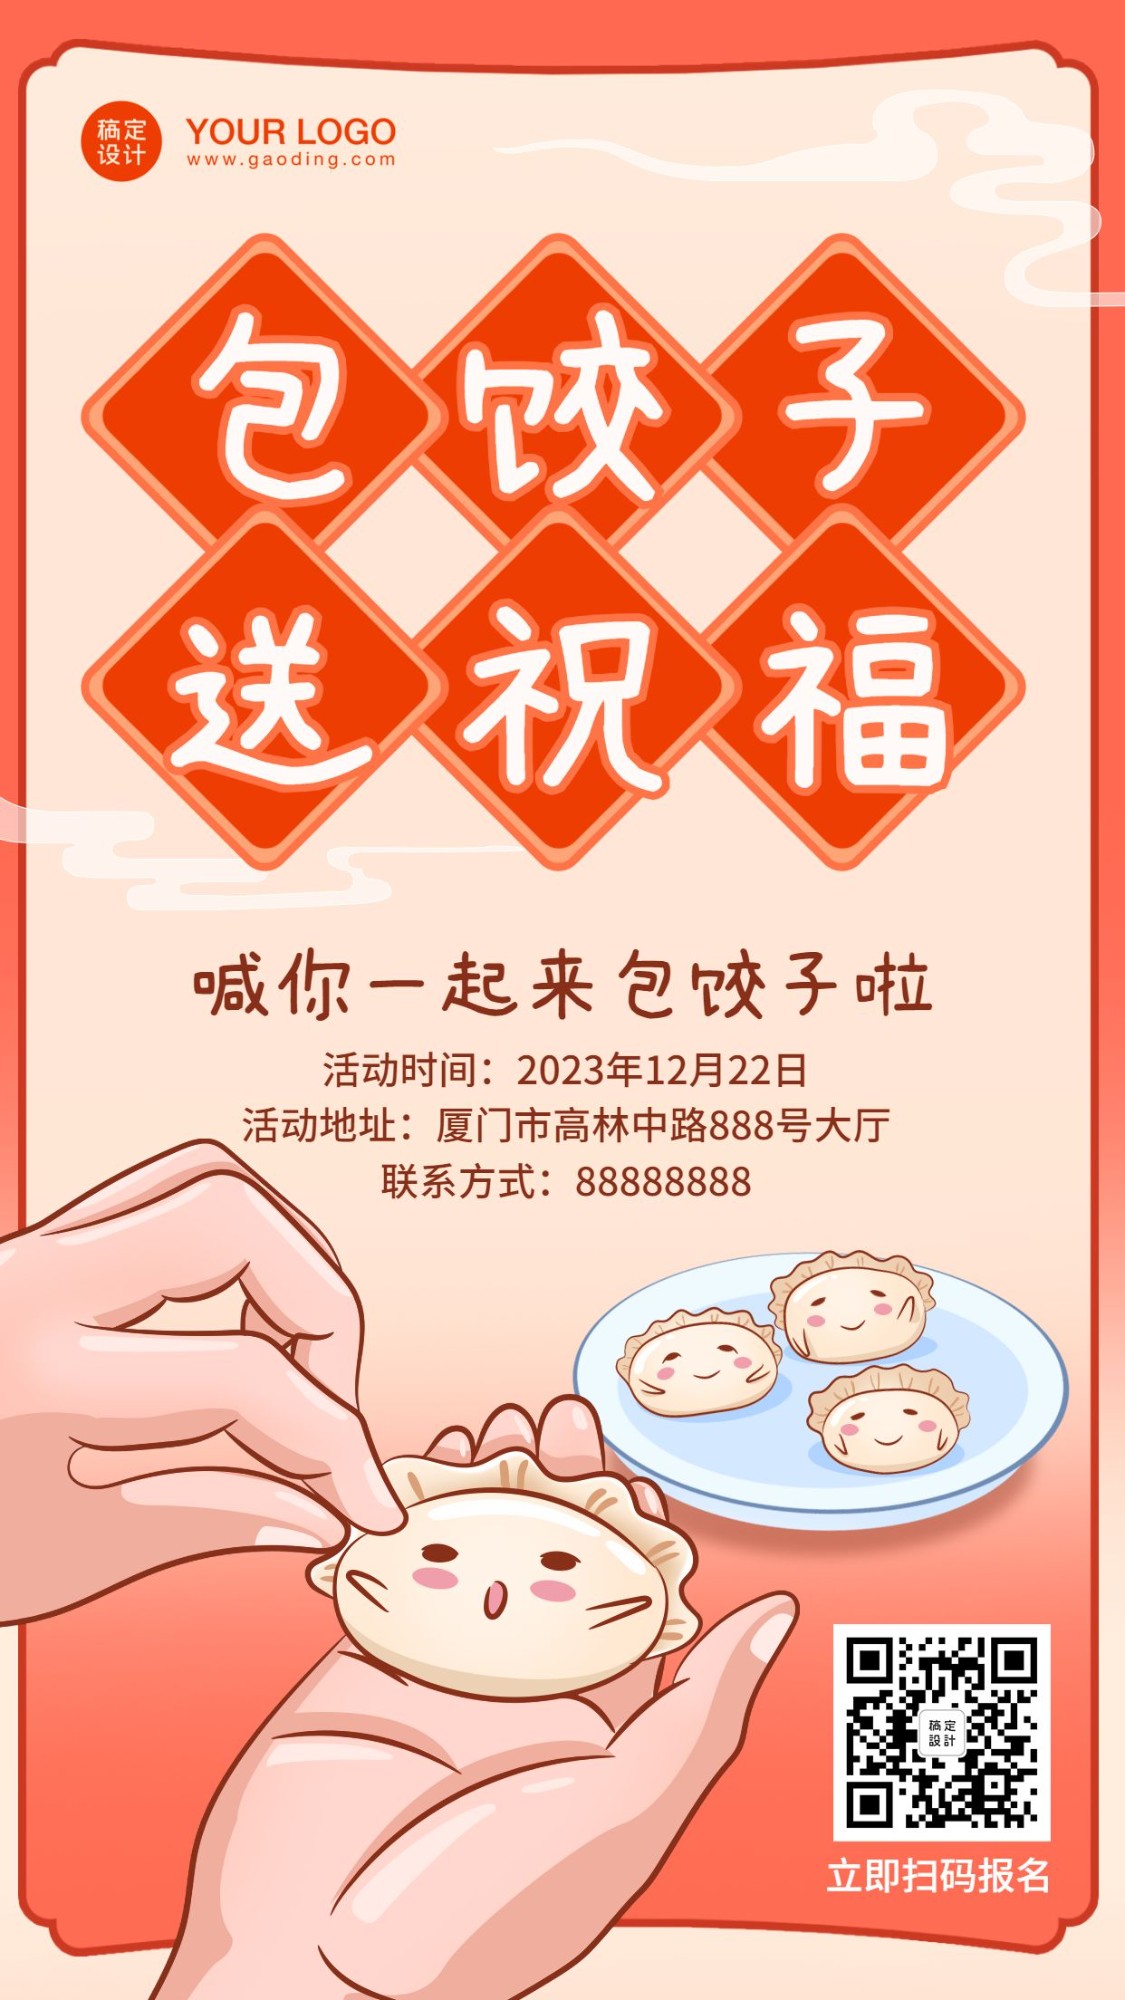 冬至节气饺子产品活动营销促销手机海报